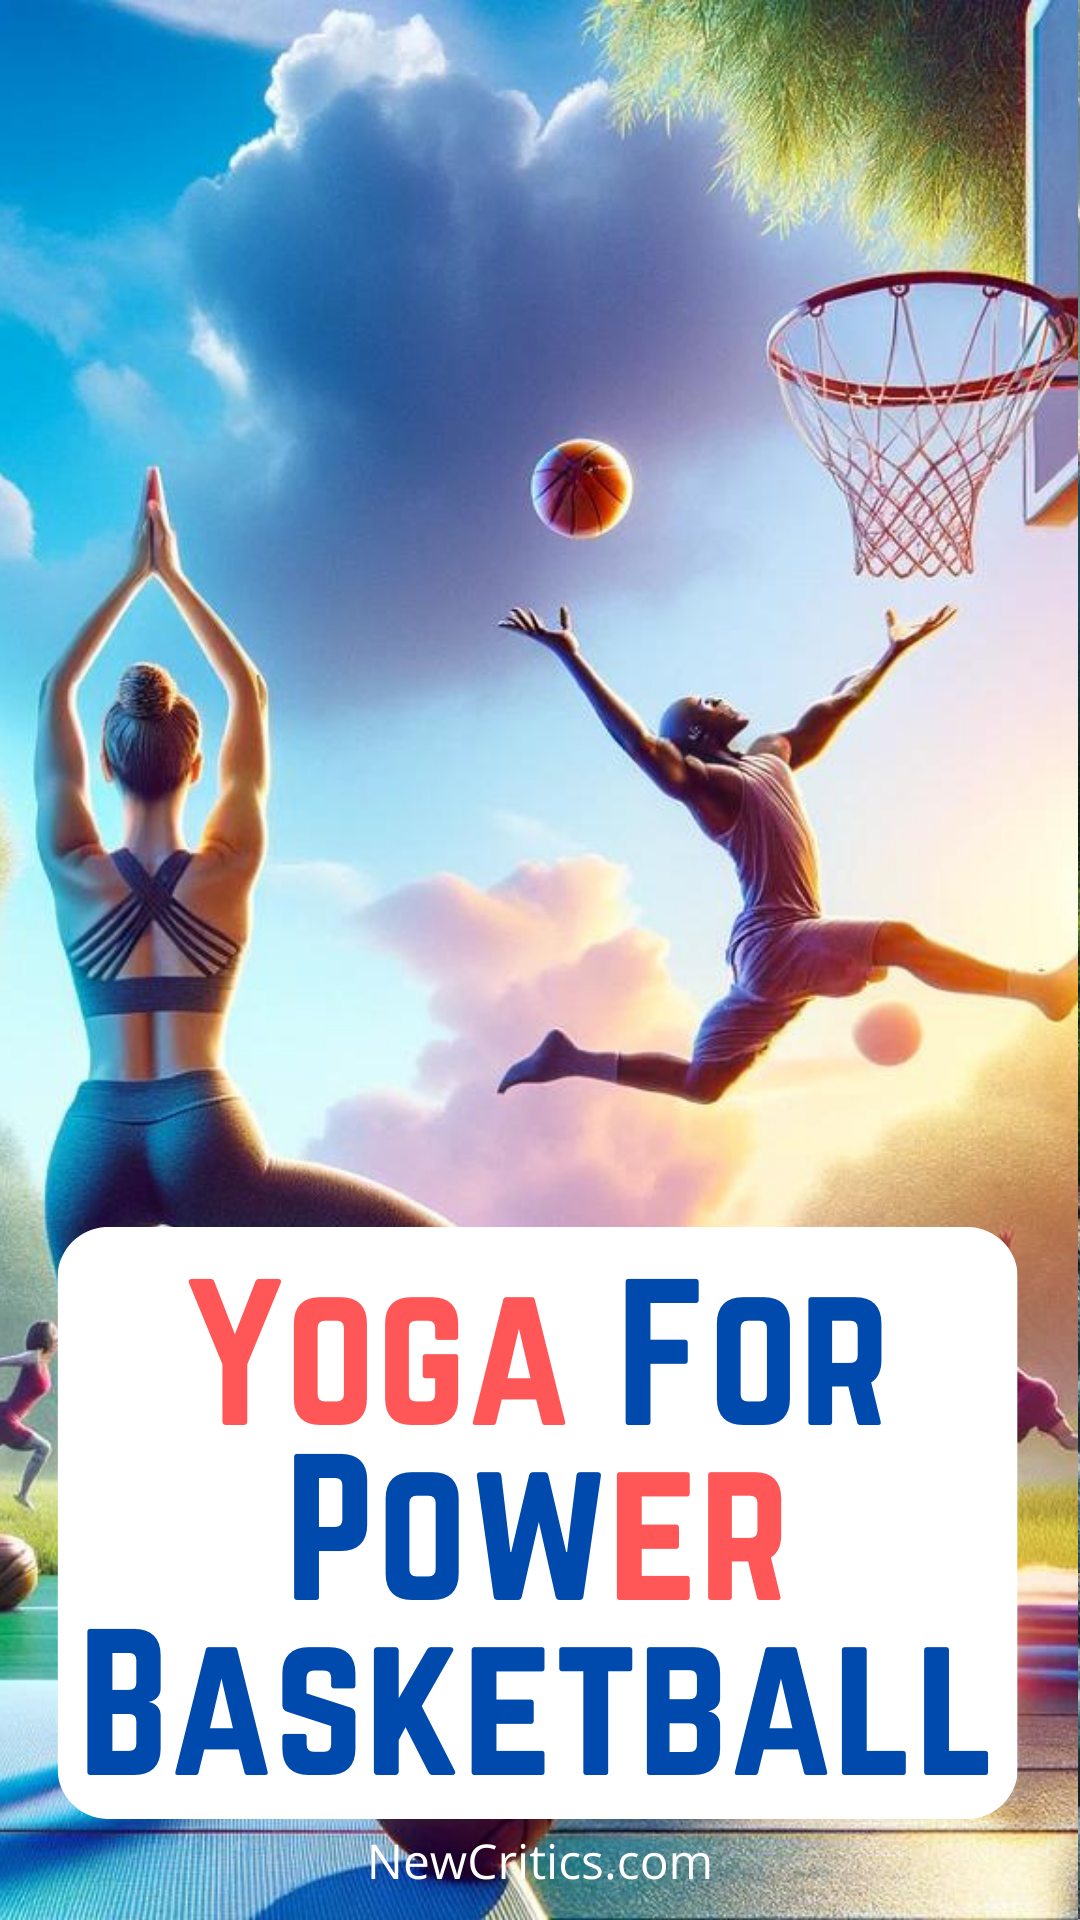 Yoga For Power Basketball